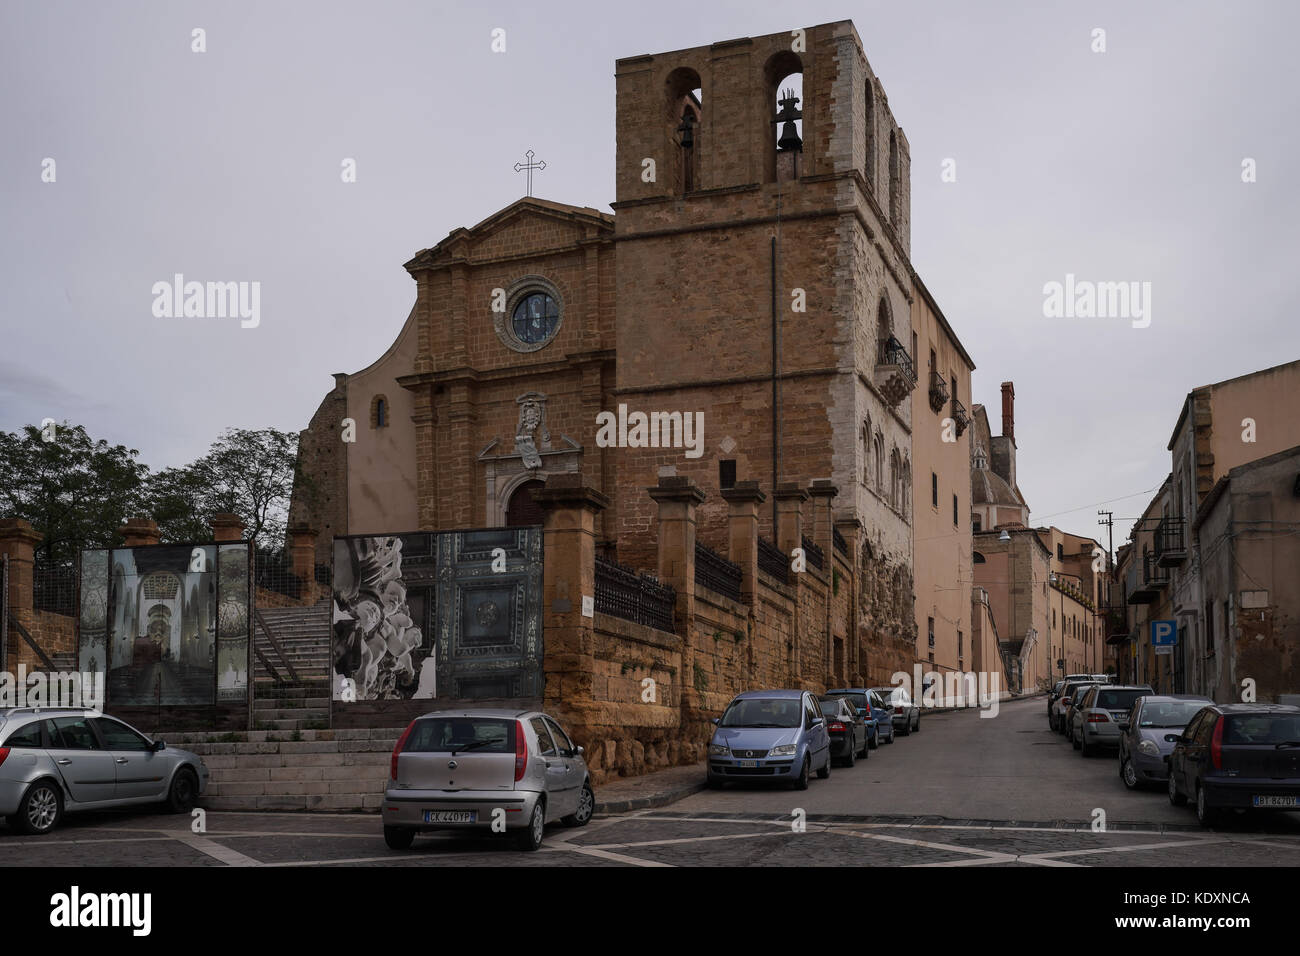 Die barocke Kathedrale in Agrigento. Aus einer Serie von Fotos in Sizilien, Italien. foto Datum: Donnerstag, 5. Oktober 2017. Photo Credit: Stockfoto